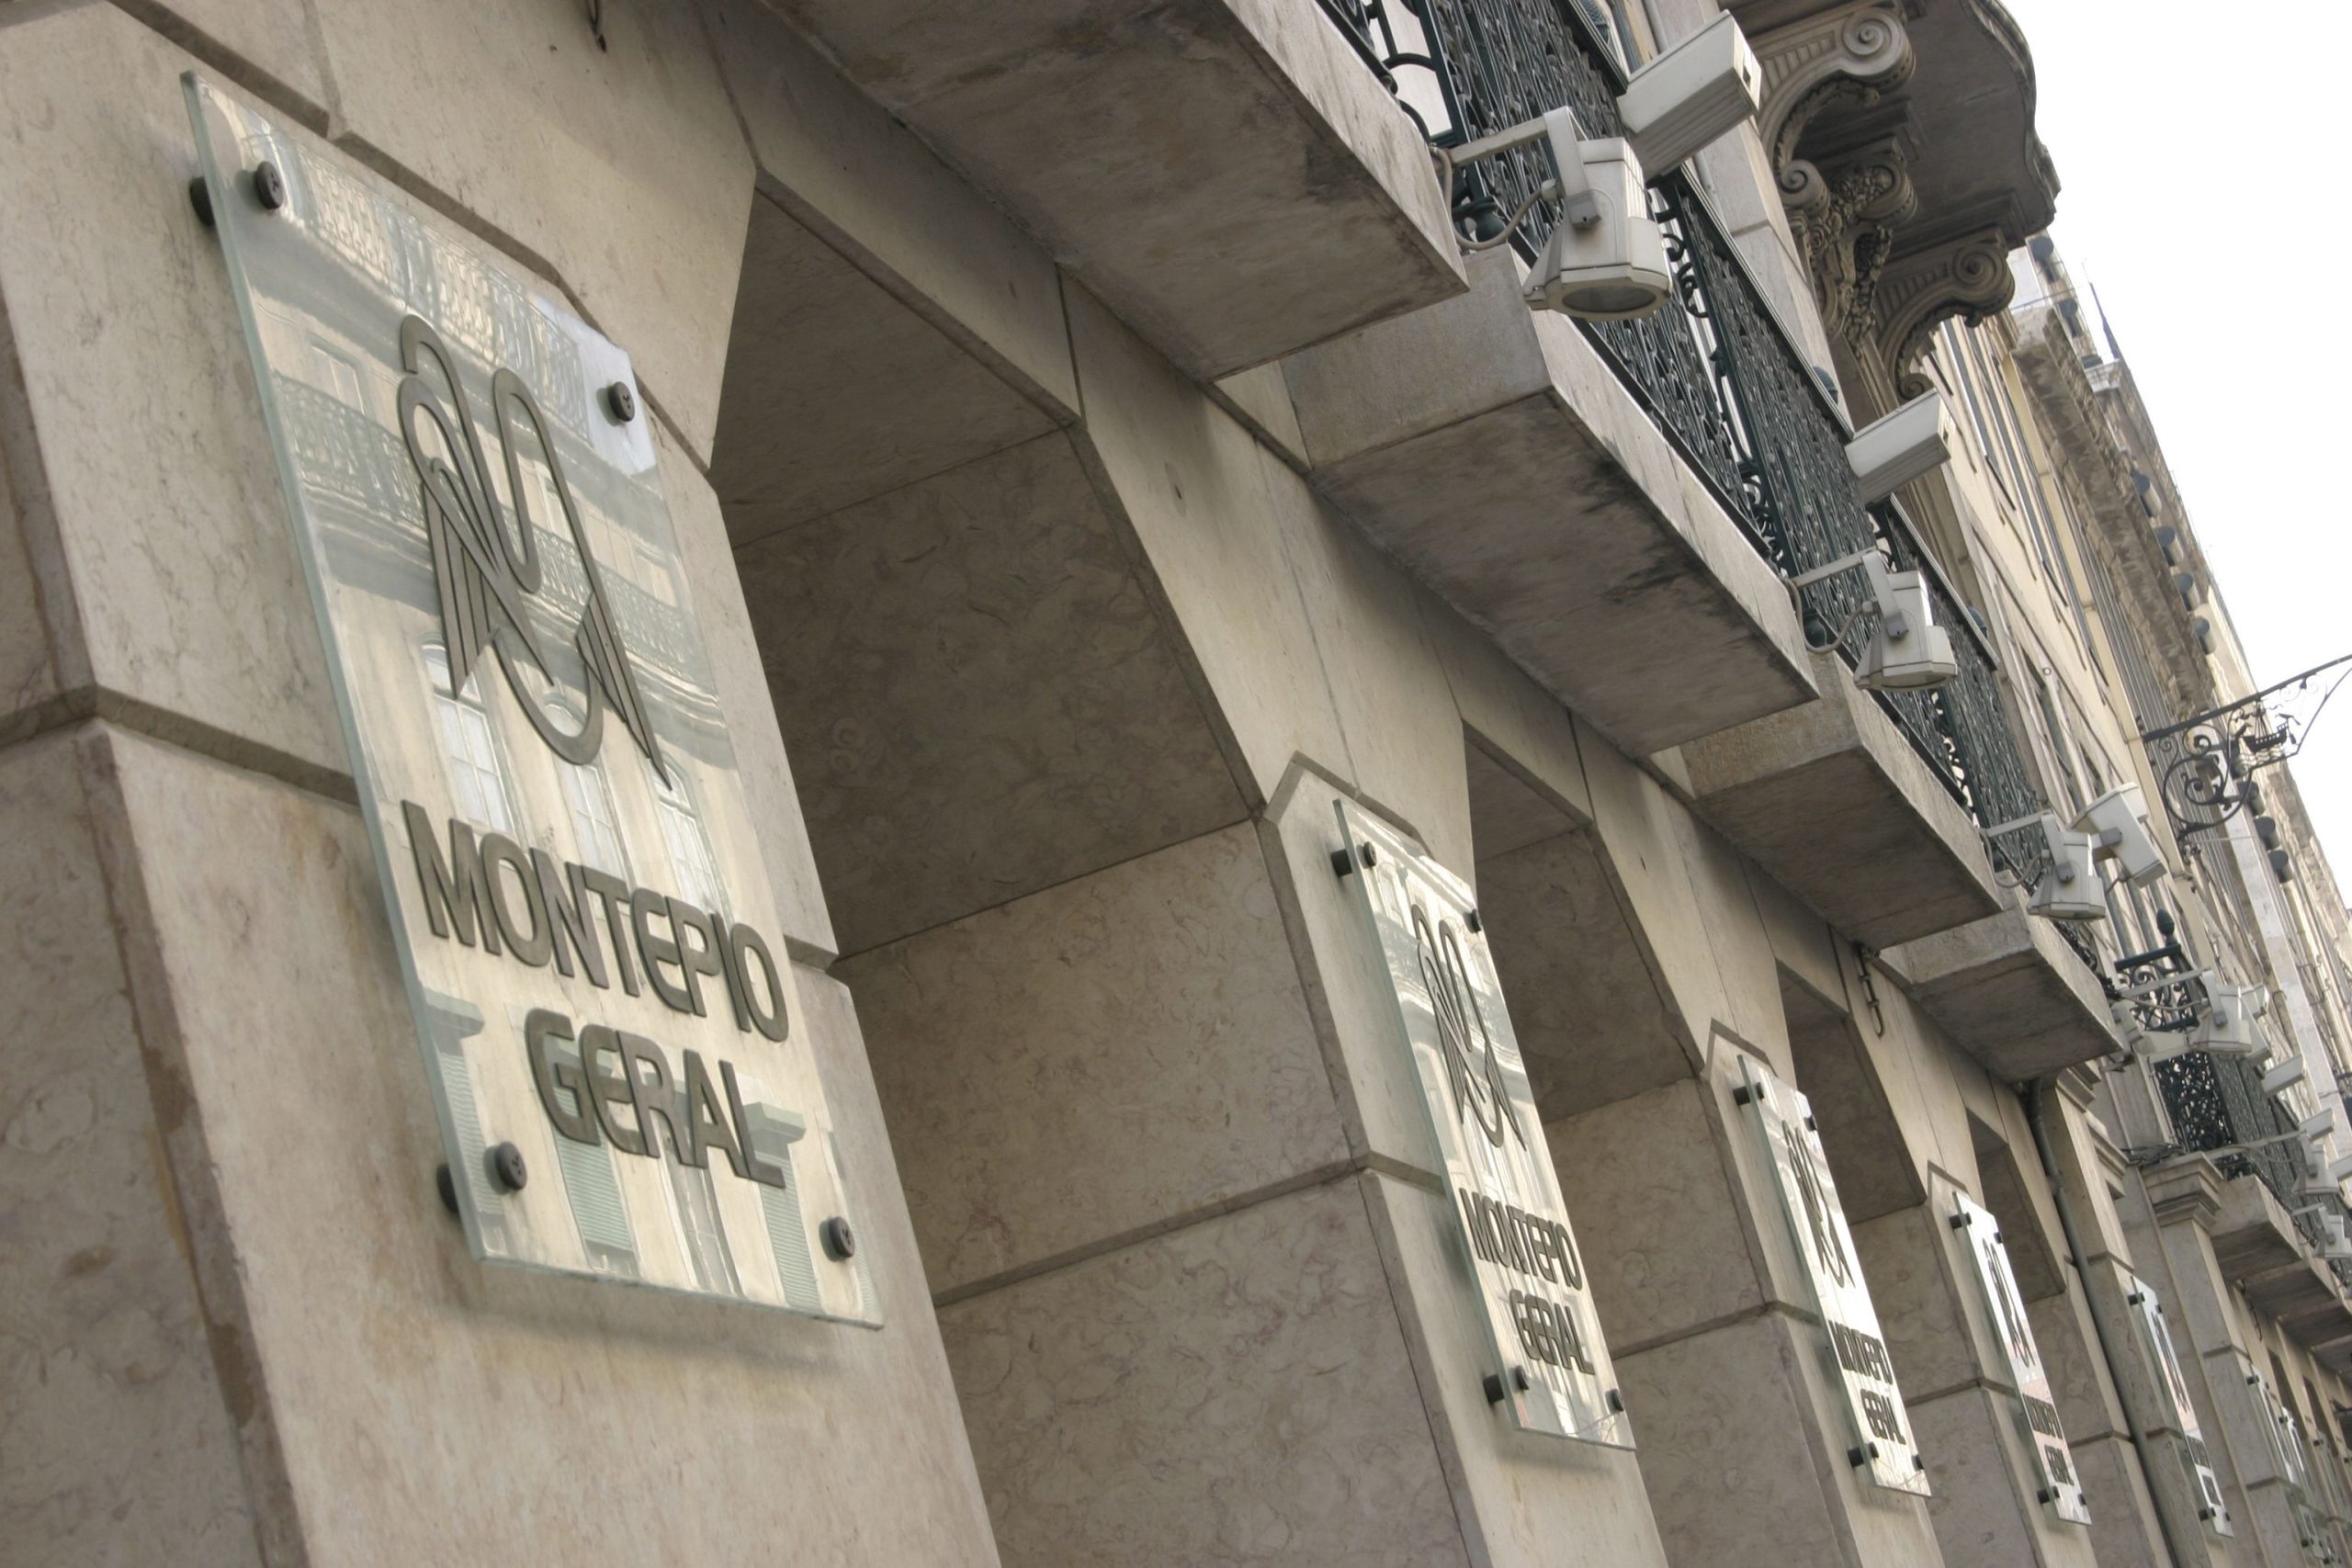 Montepio alvo de auditoria forense a pedido do Banco de Portugal